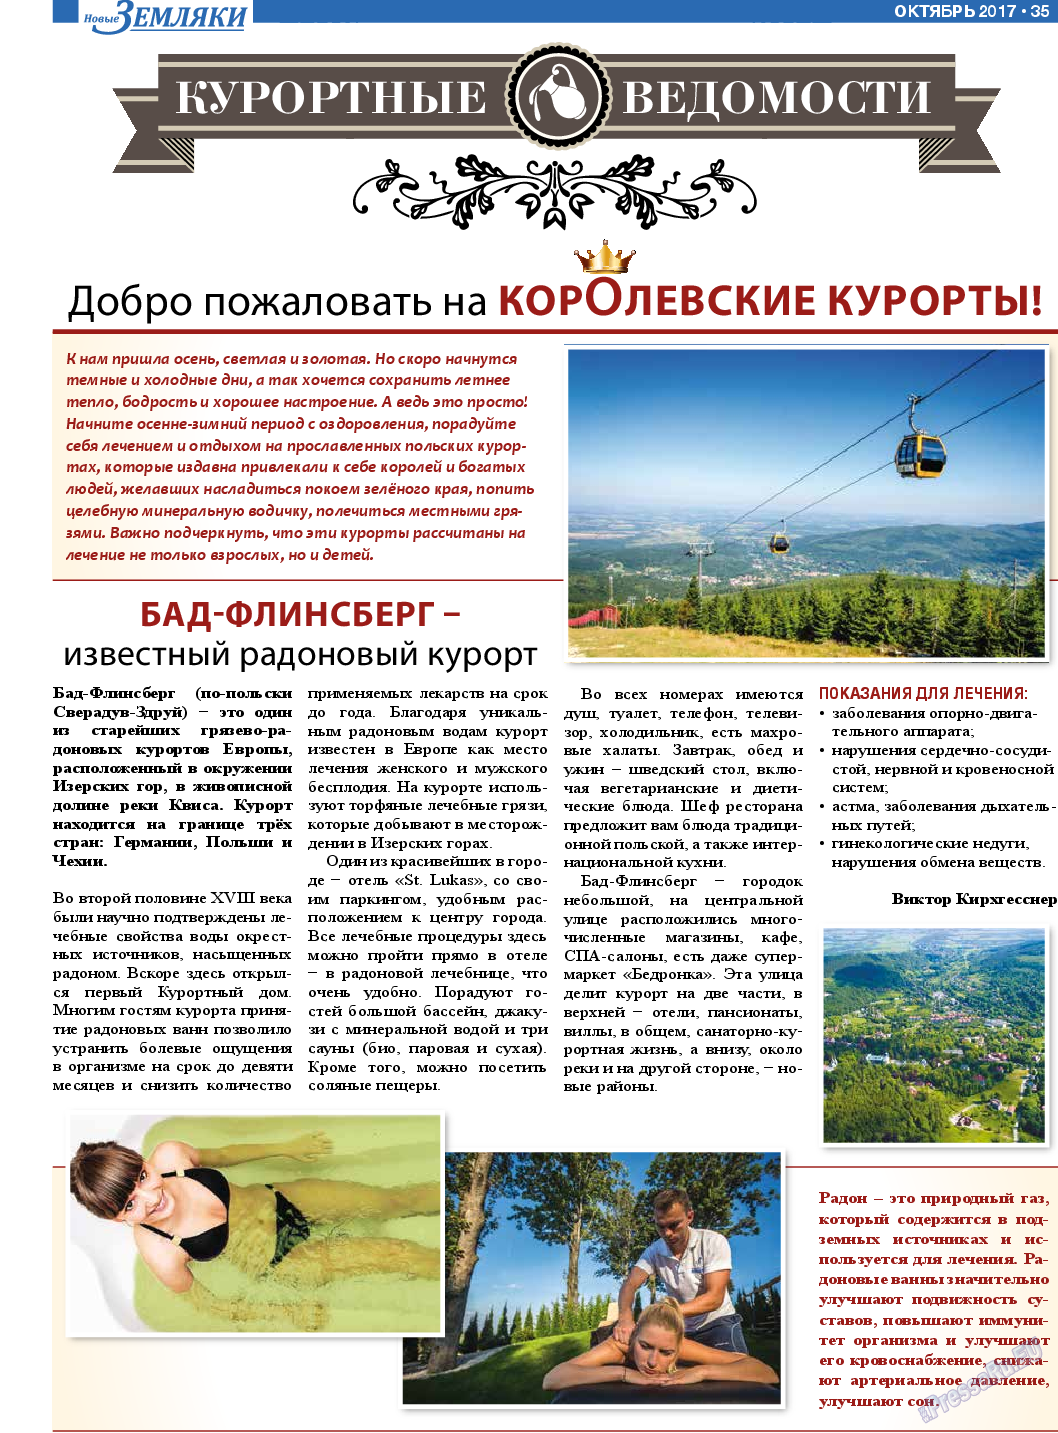 Новые Земляки, газета. 2017 №10 стр.35